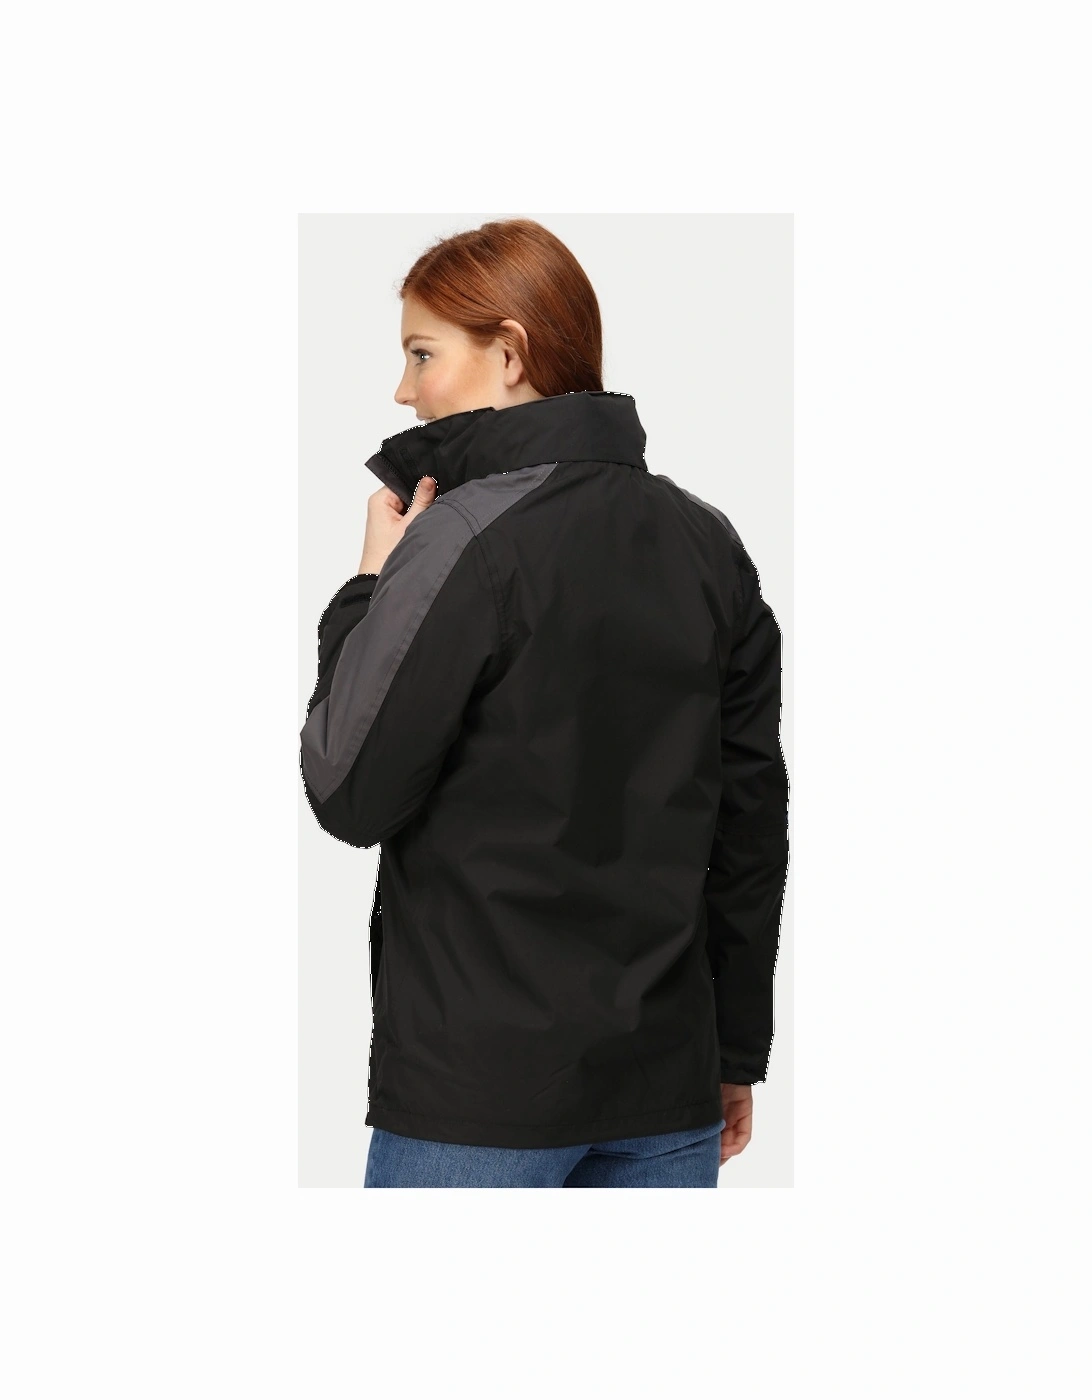 Womens/Ladies Defender III 3-In-1 Jacket  (Waterproof & Windproof)